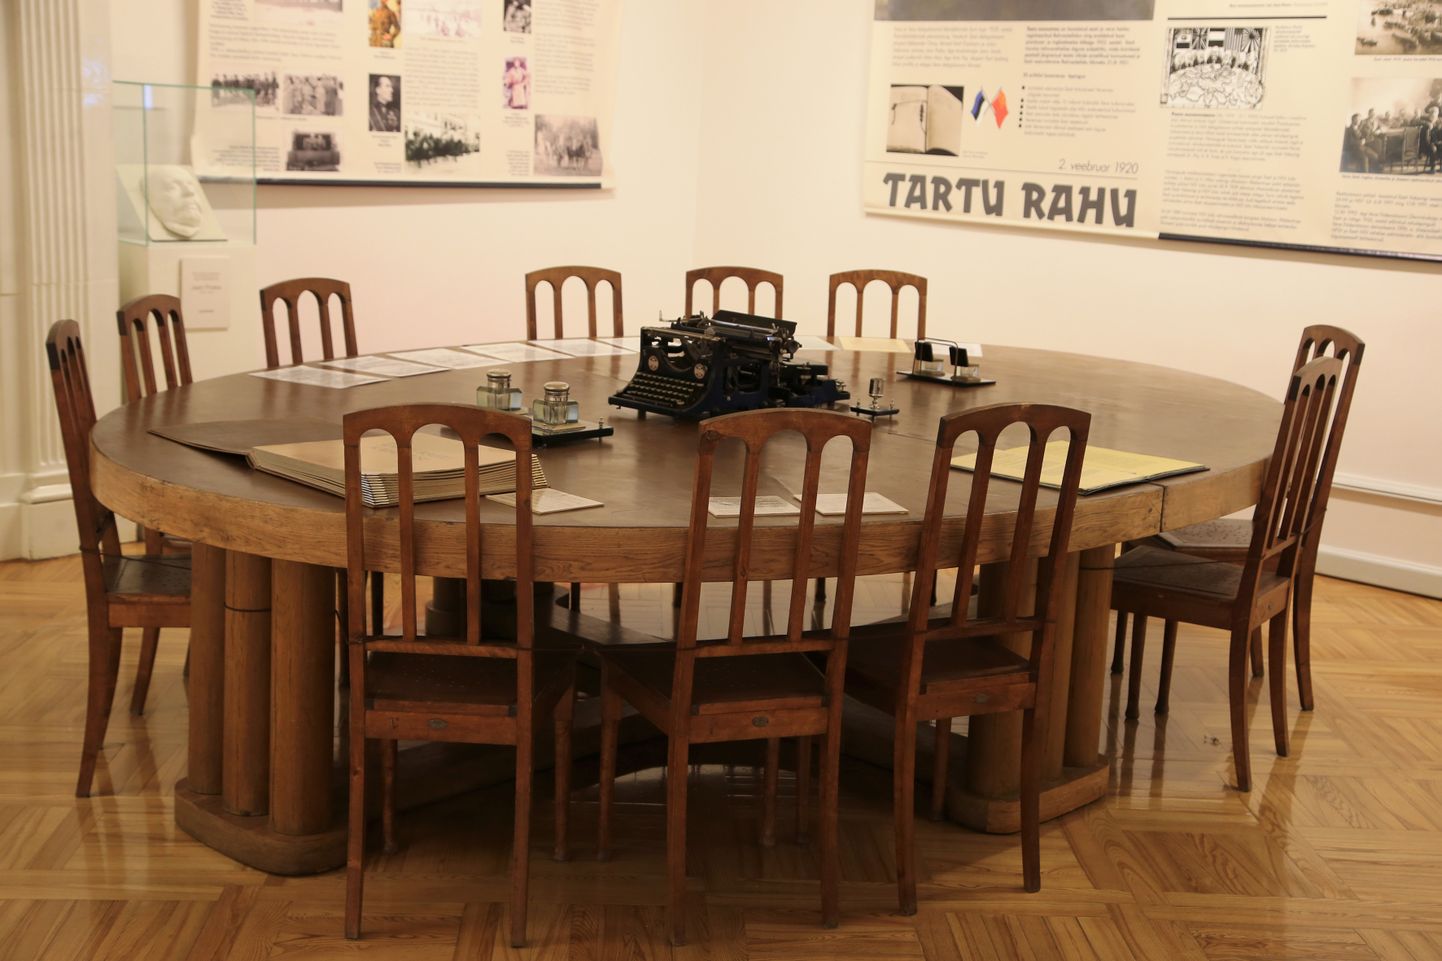 Tartu linnamuuseumis eksponeeritav laud, mille taga sõlmiti Tartu rahuleping.